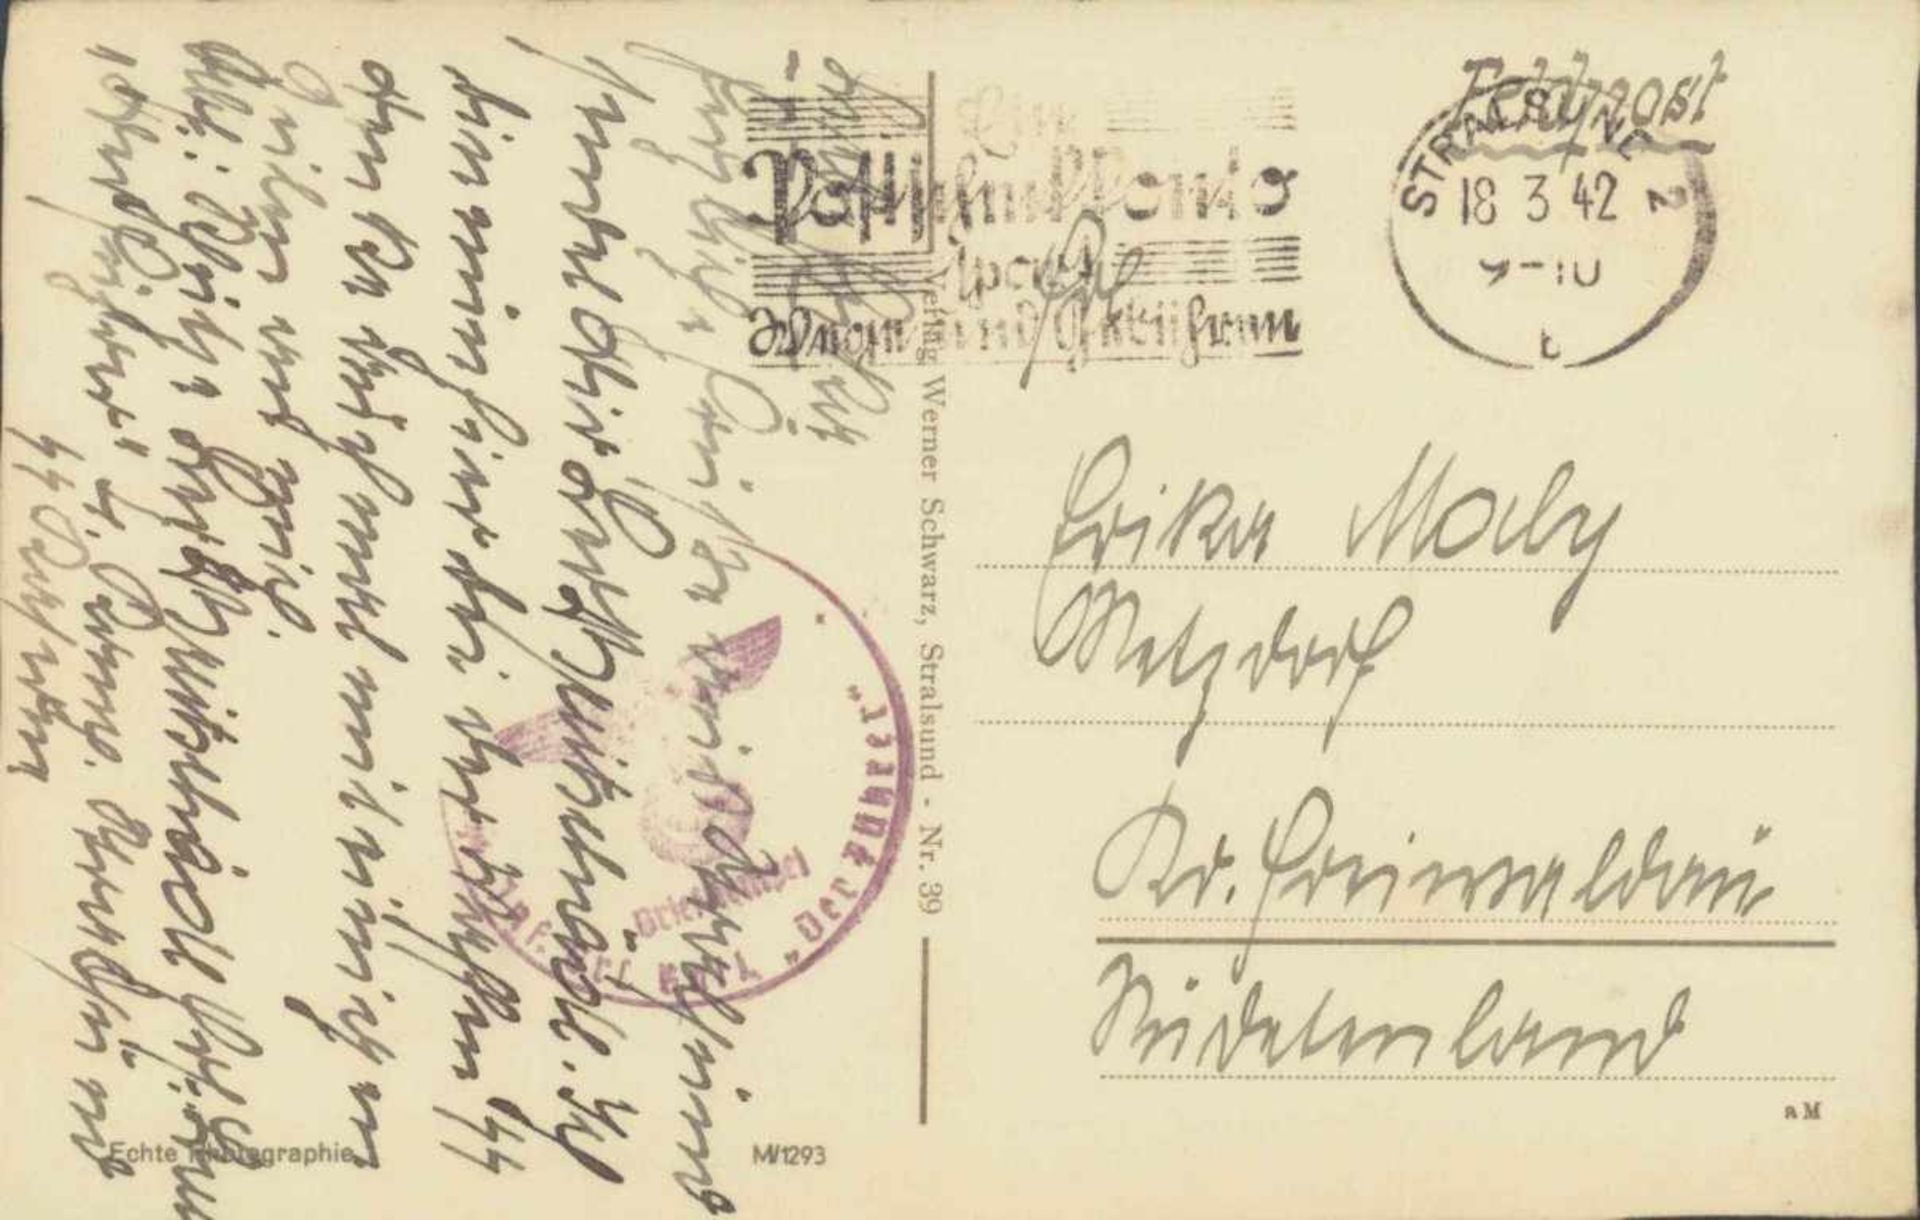 SS-FELDPOST 1942, INFANTERIE BATAILLON "DER FÜHRER"SS-Feldpostkarte vom 18.3.1942 aus Stralsund